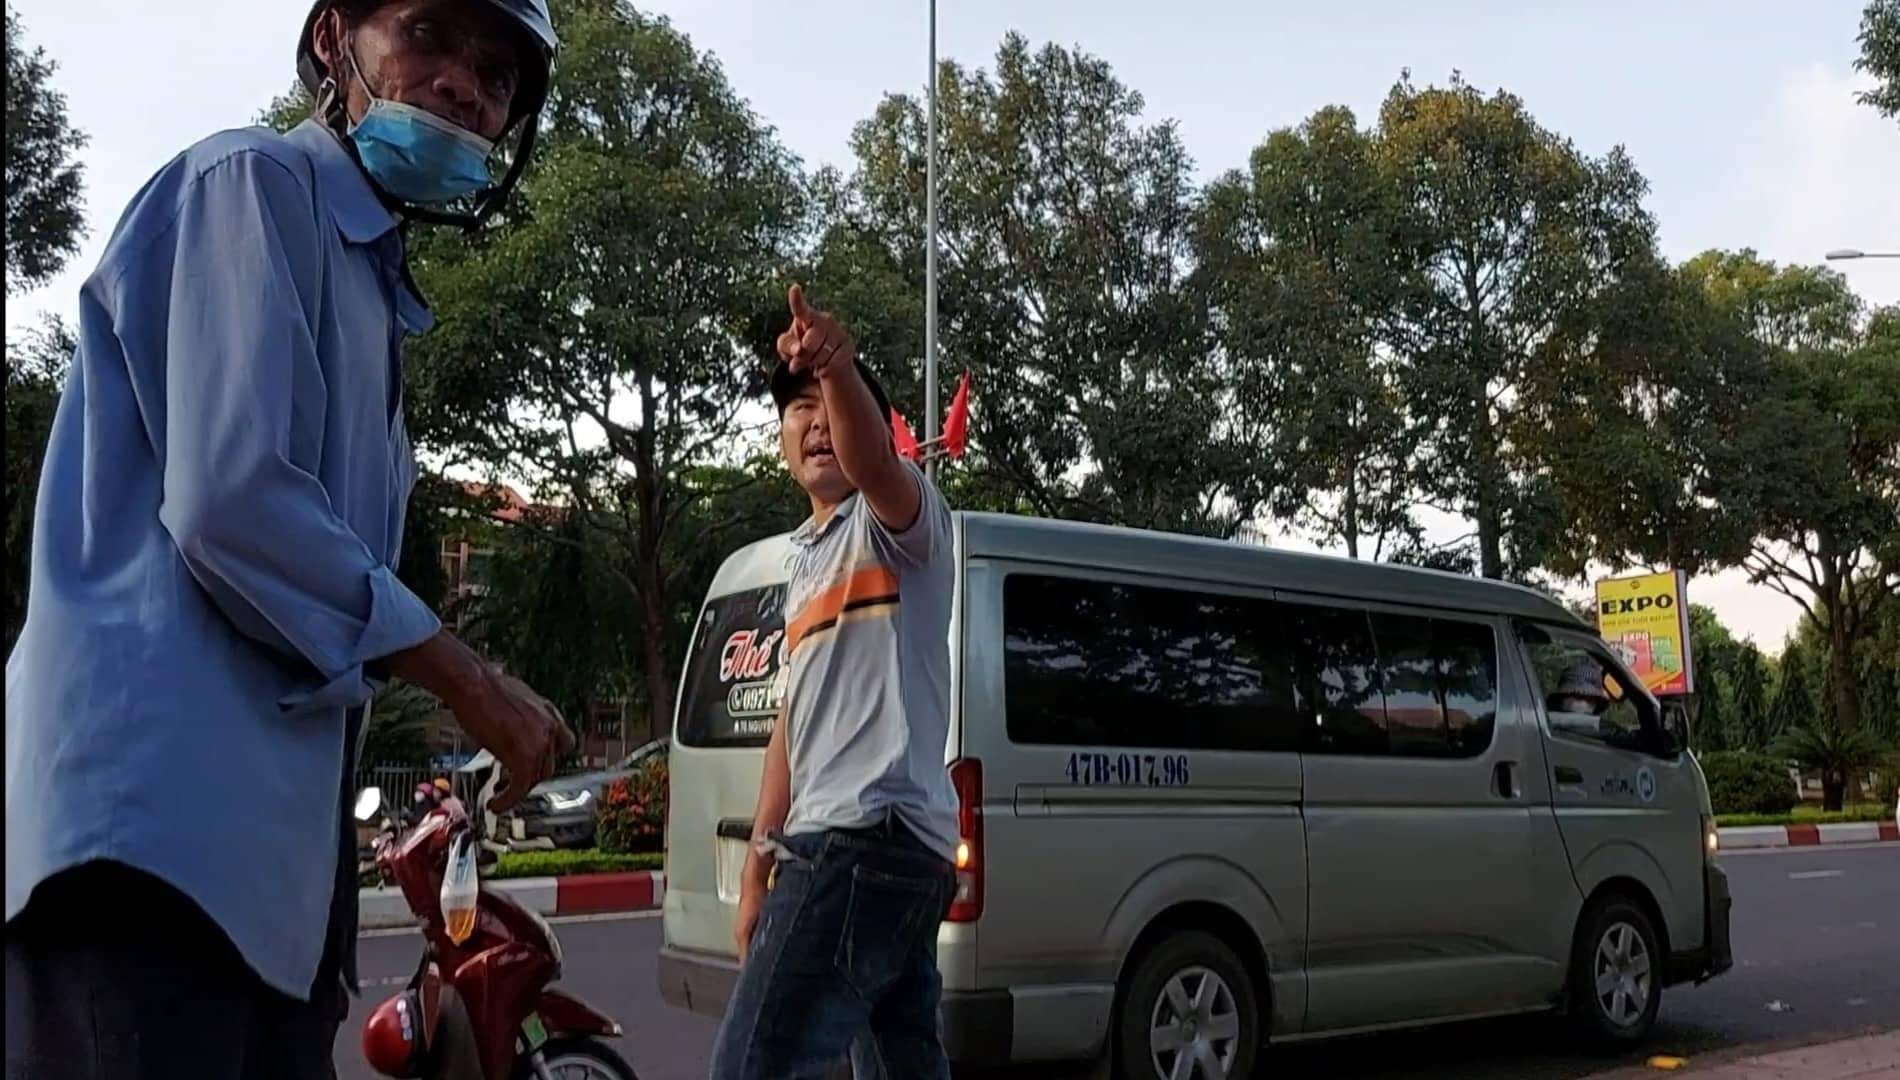 Giam đôc Công an Đắk Lắk chỉ đạo xử lý nghiêm tài xế hành hung phóng viên - Ảnh 1.